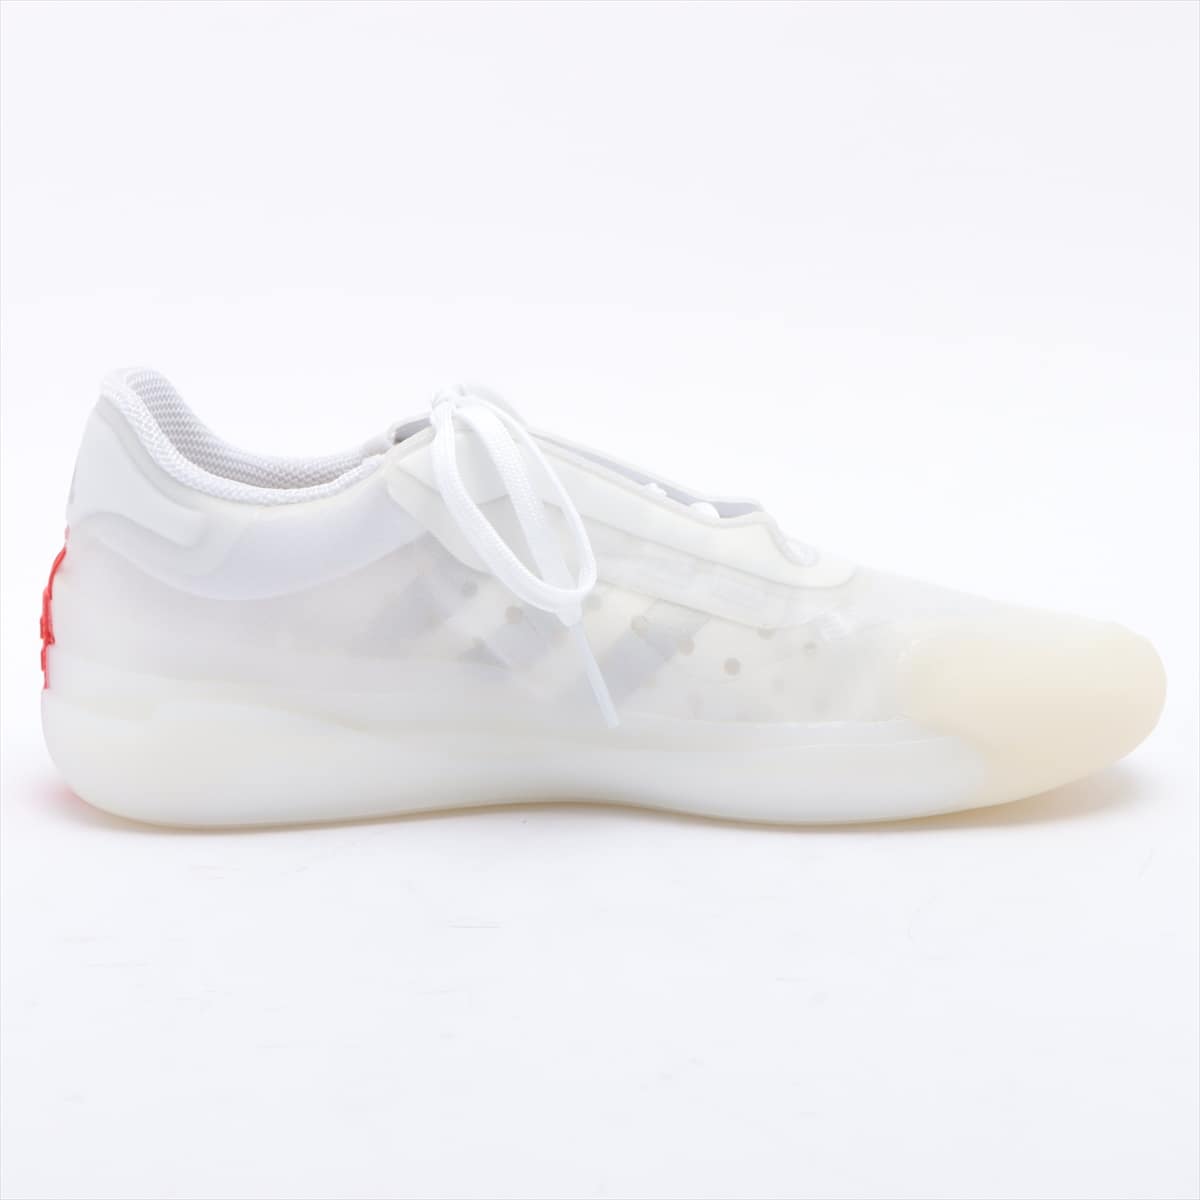 Prada x Adidas Fabric Sneakers 26.0cm Men's White LUNA ROSSA